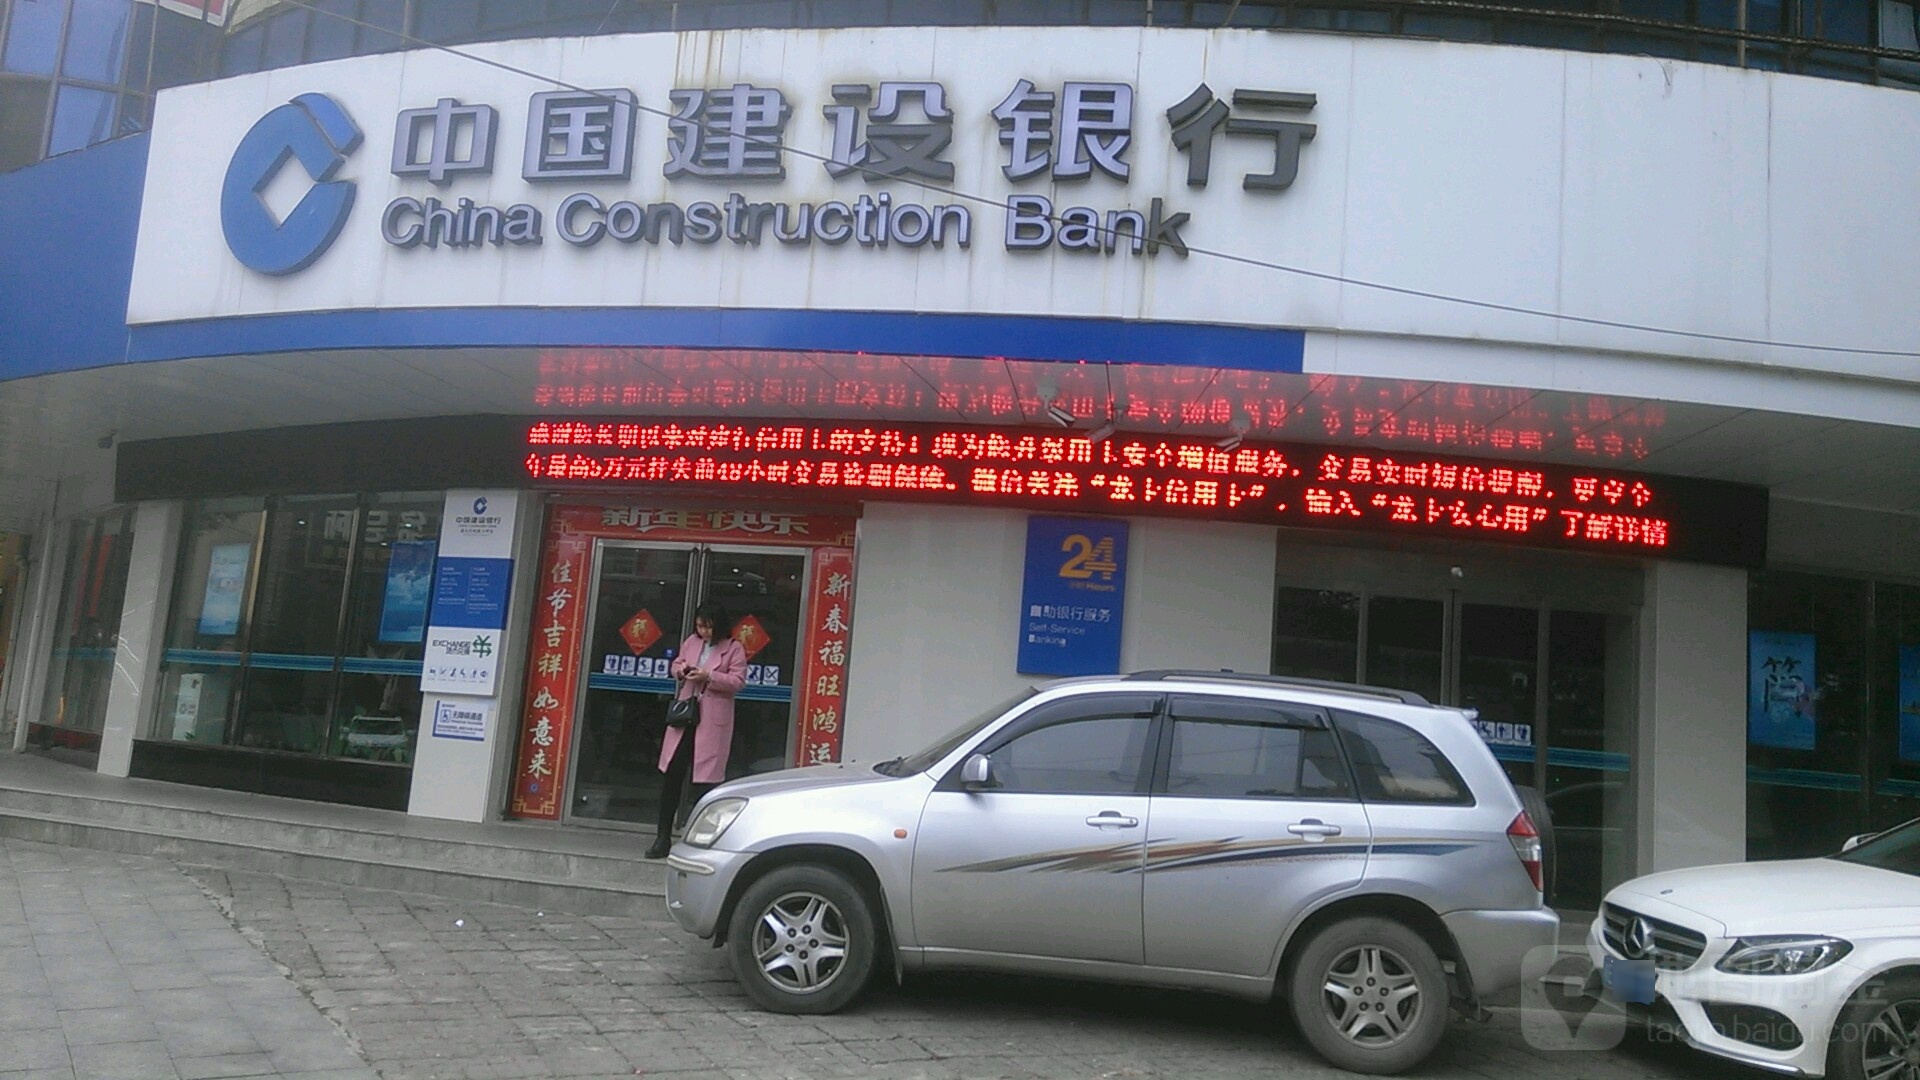 中国建设银行(邵东红岭路支行)